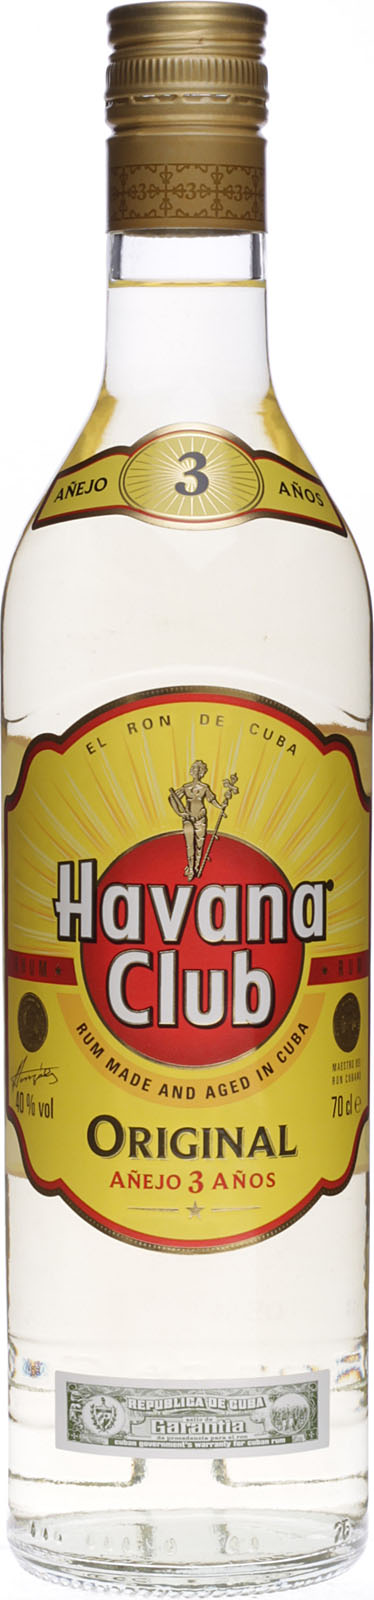 Havana Club 3 0,7 % Jahre 40 Vol. Shop Liter im